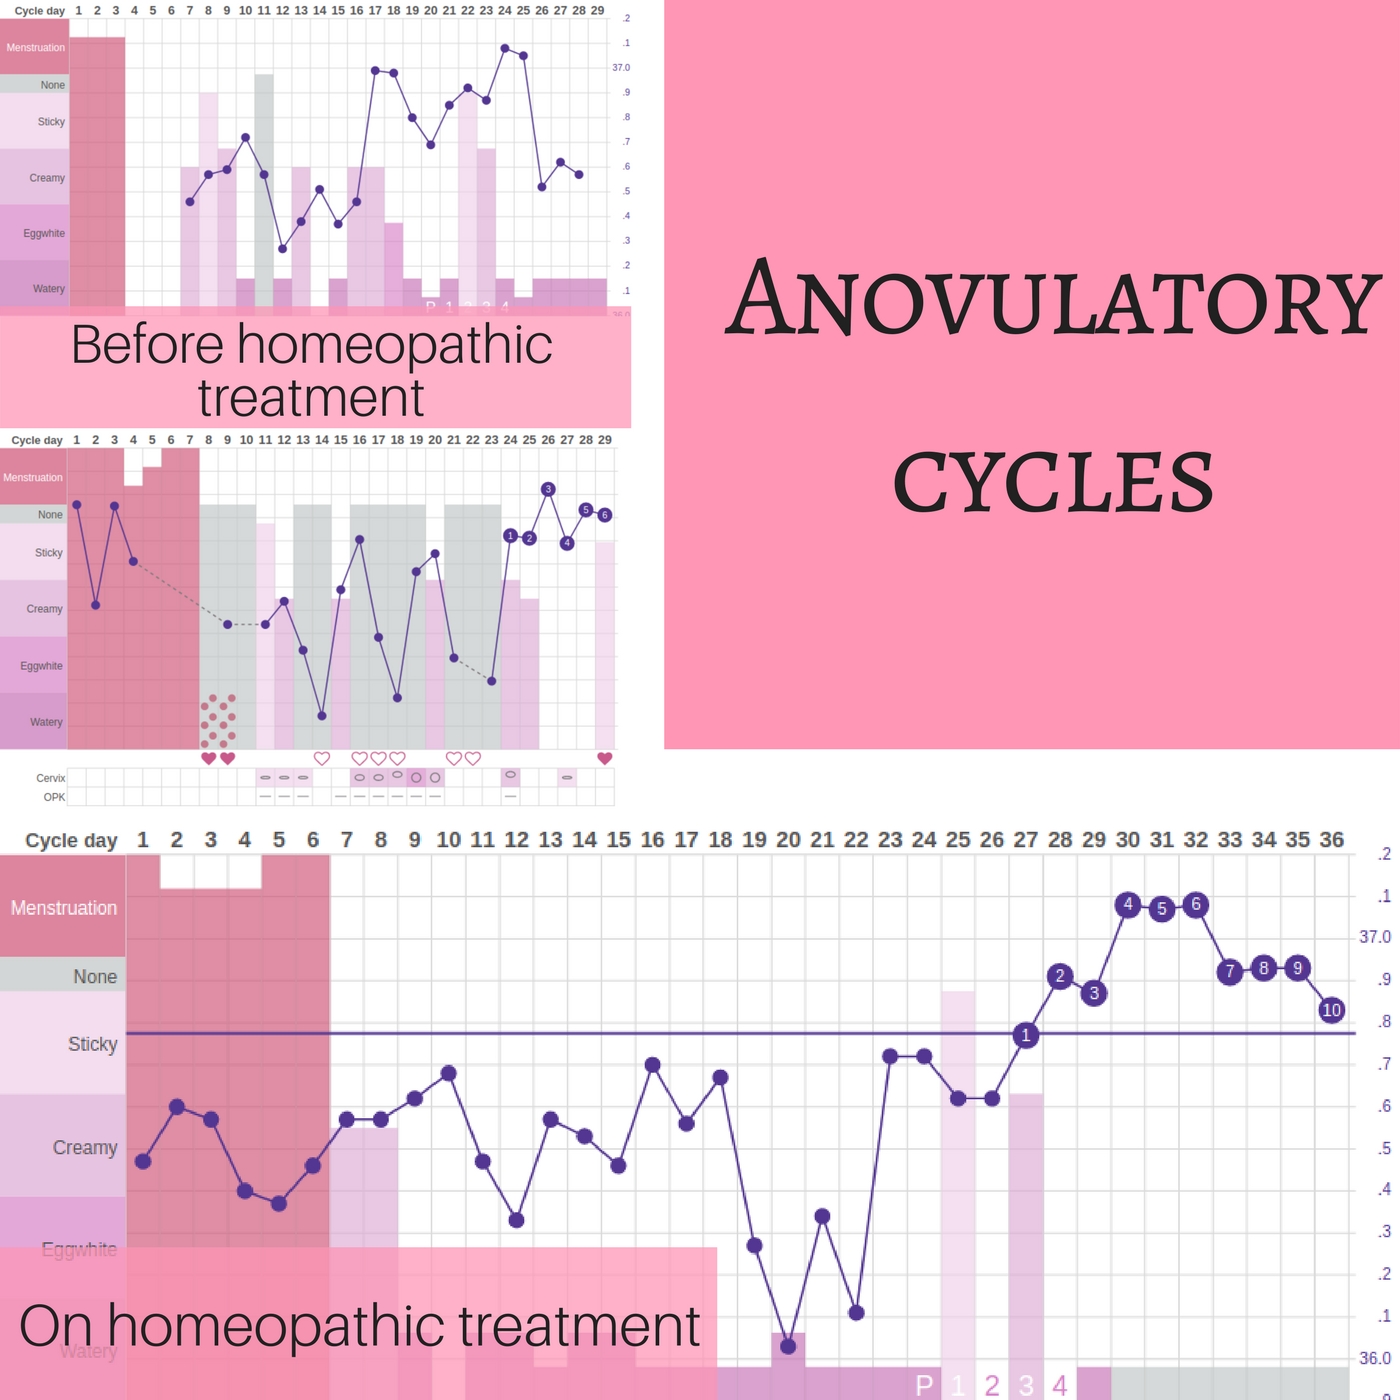 Anovulatory cycles